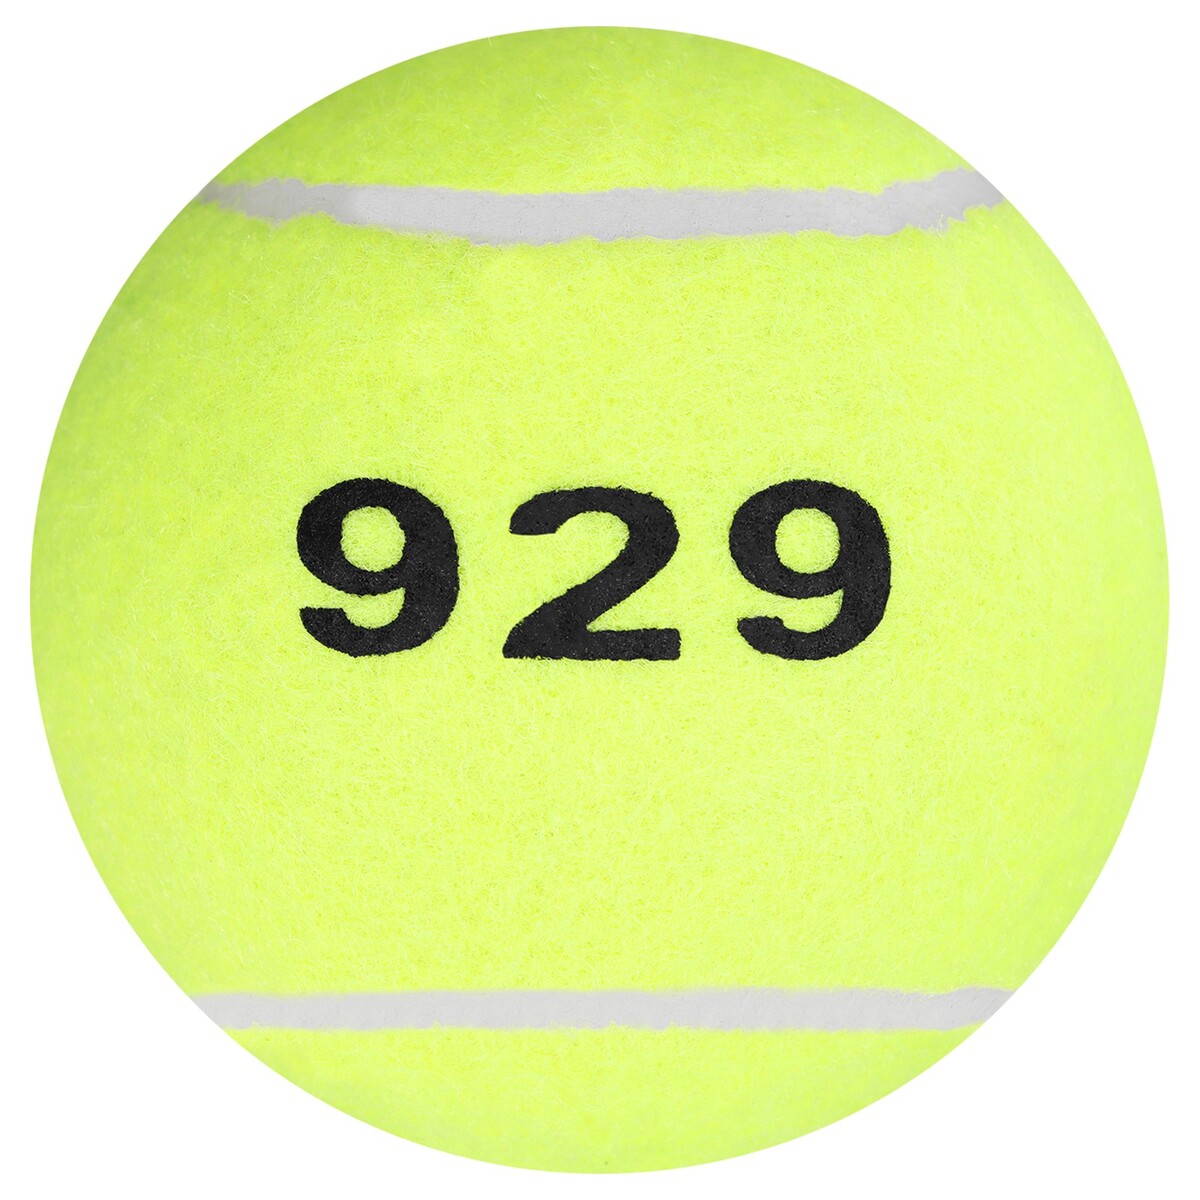 фото Мяч для большого тенниса onlytop № 929, тренировочный, цвет желтый